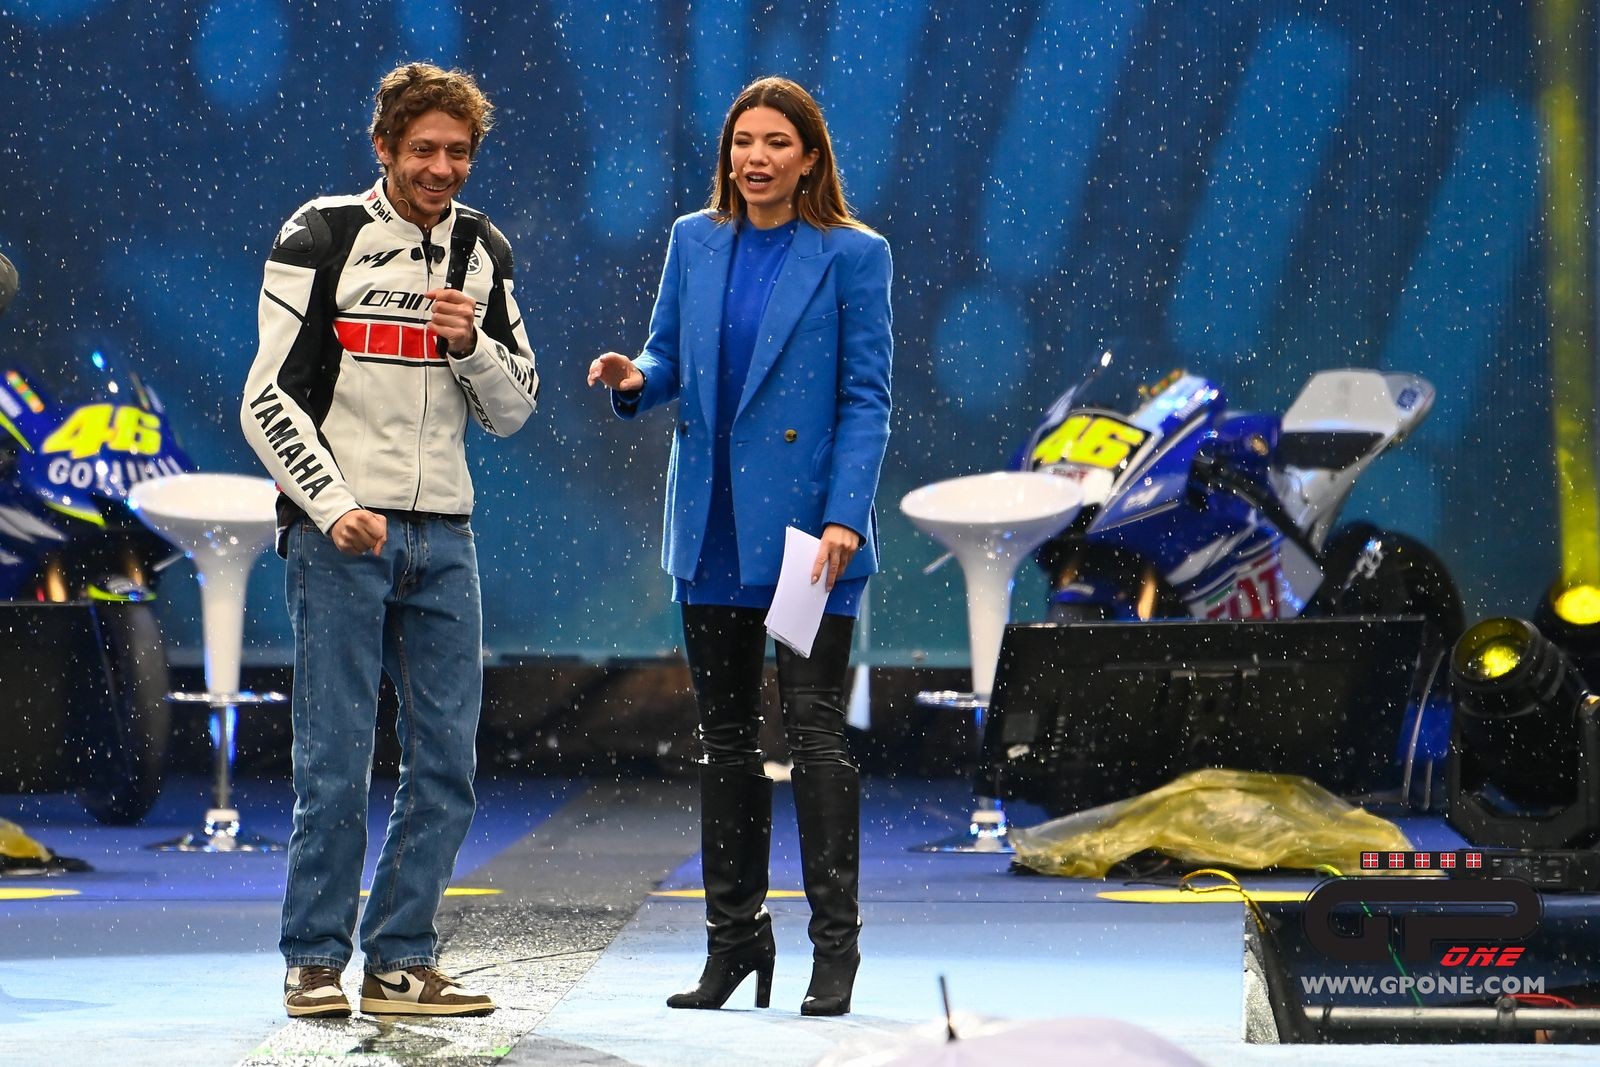 MotoGP, One More Rossi at EICMA: the photos | GPone.com